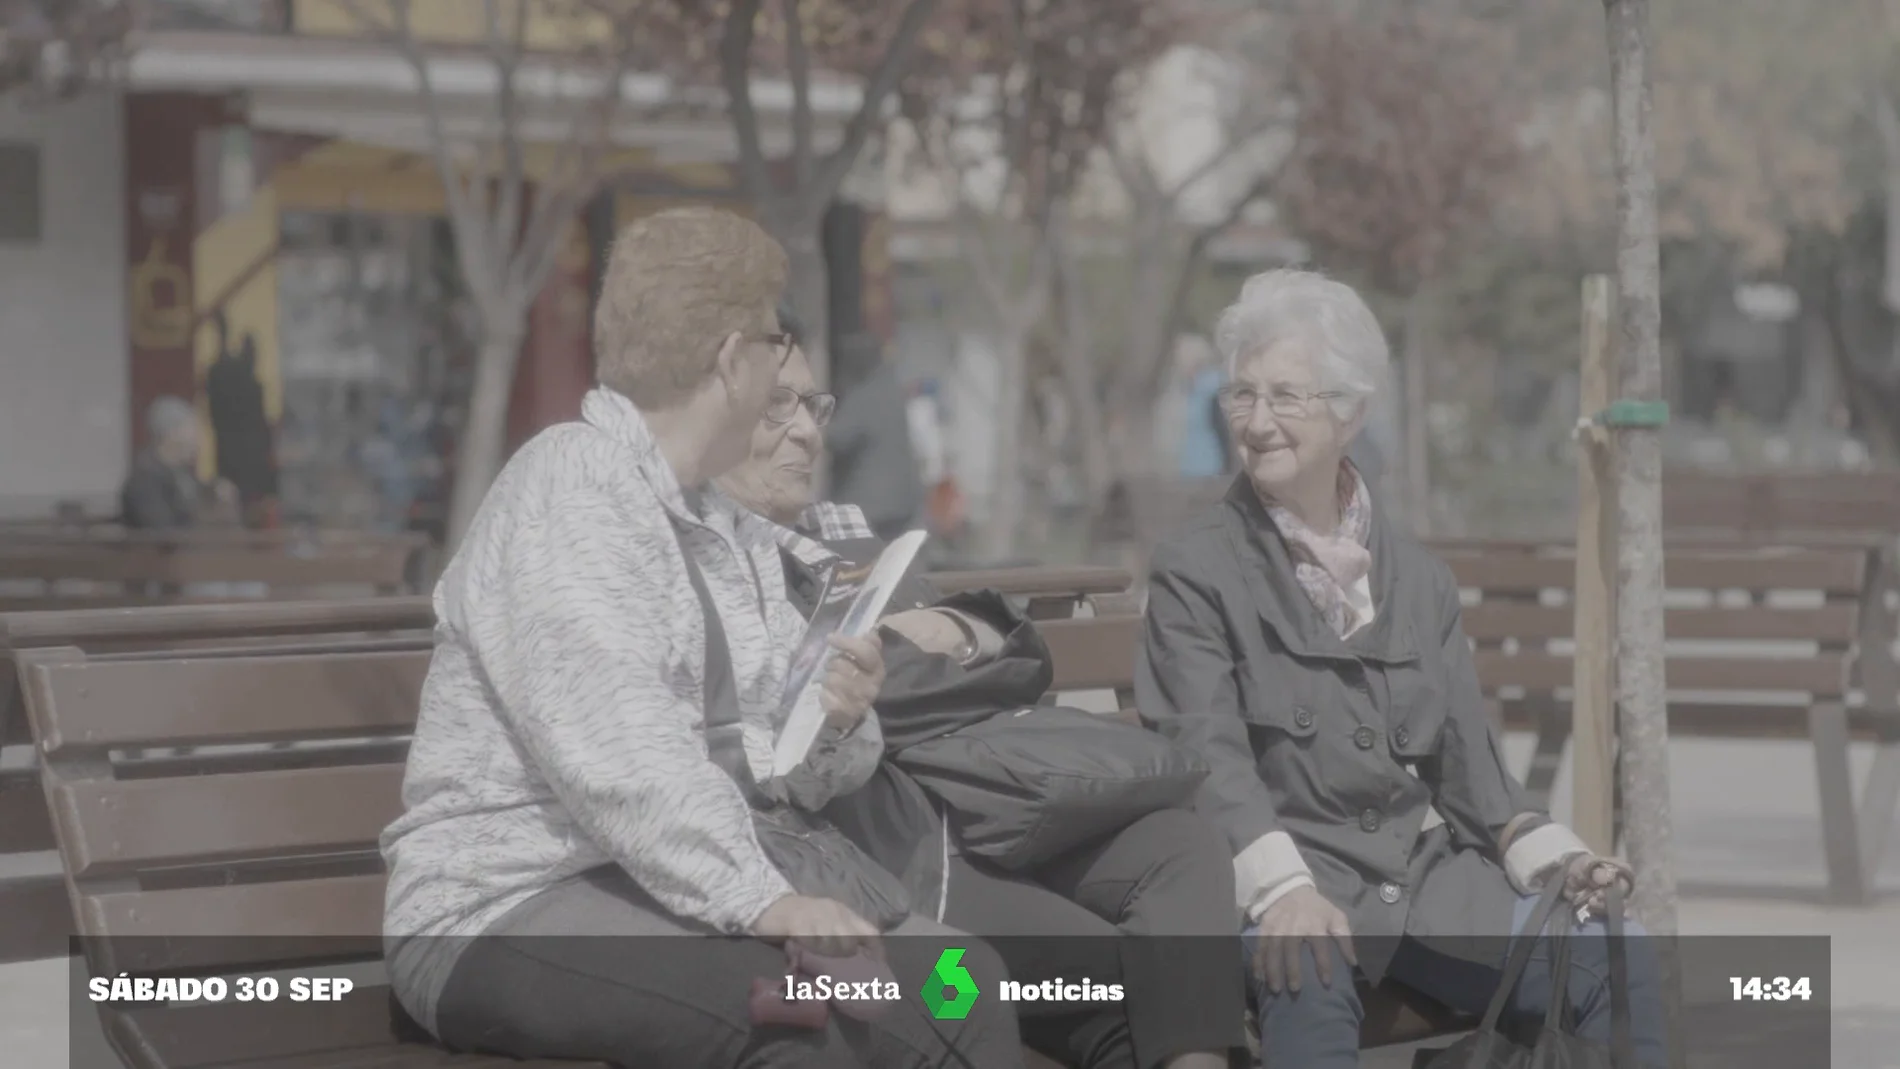 Teleasistencia: Precios y servicios para personas mayores